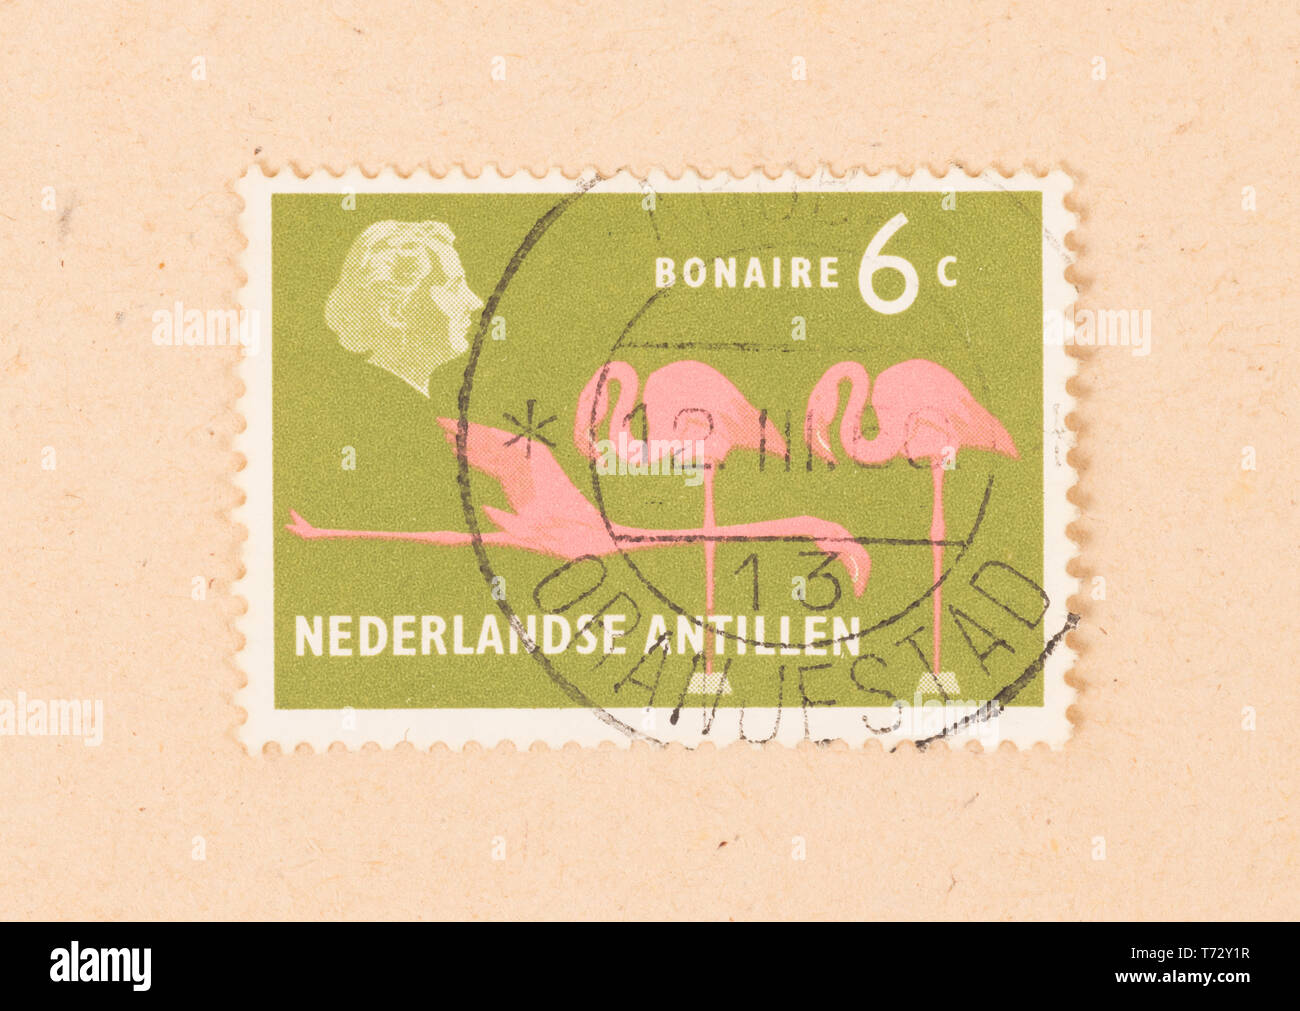 BONAIRE - CIRCA 1966: A stamp printed in Bonaire shows a flamingo, circa 1966 Stock Photo